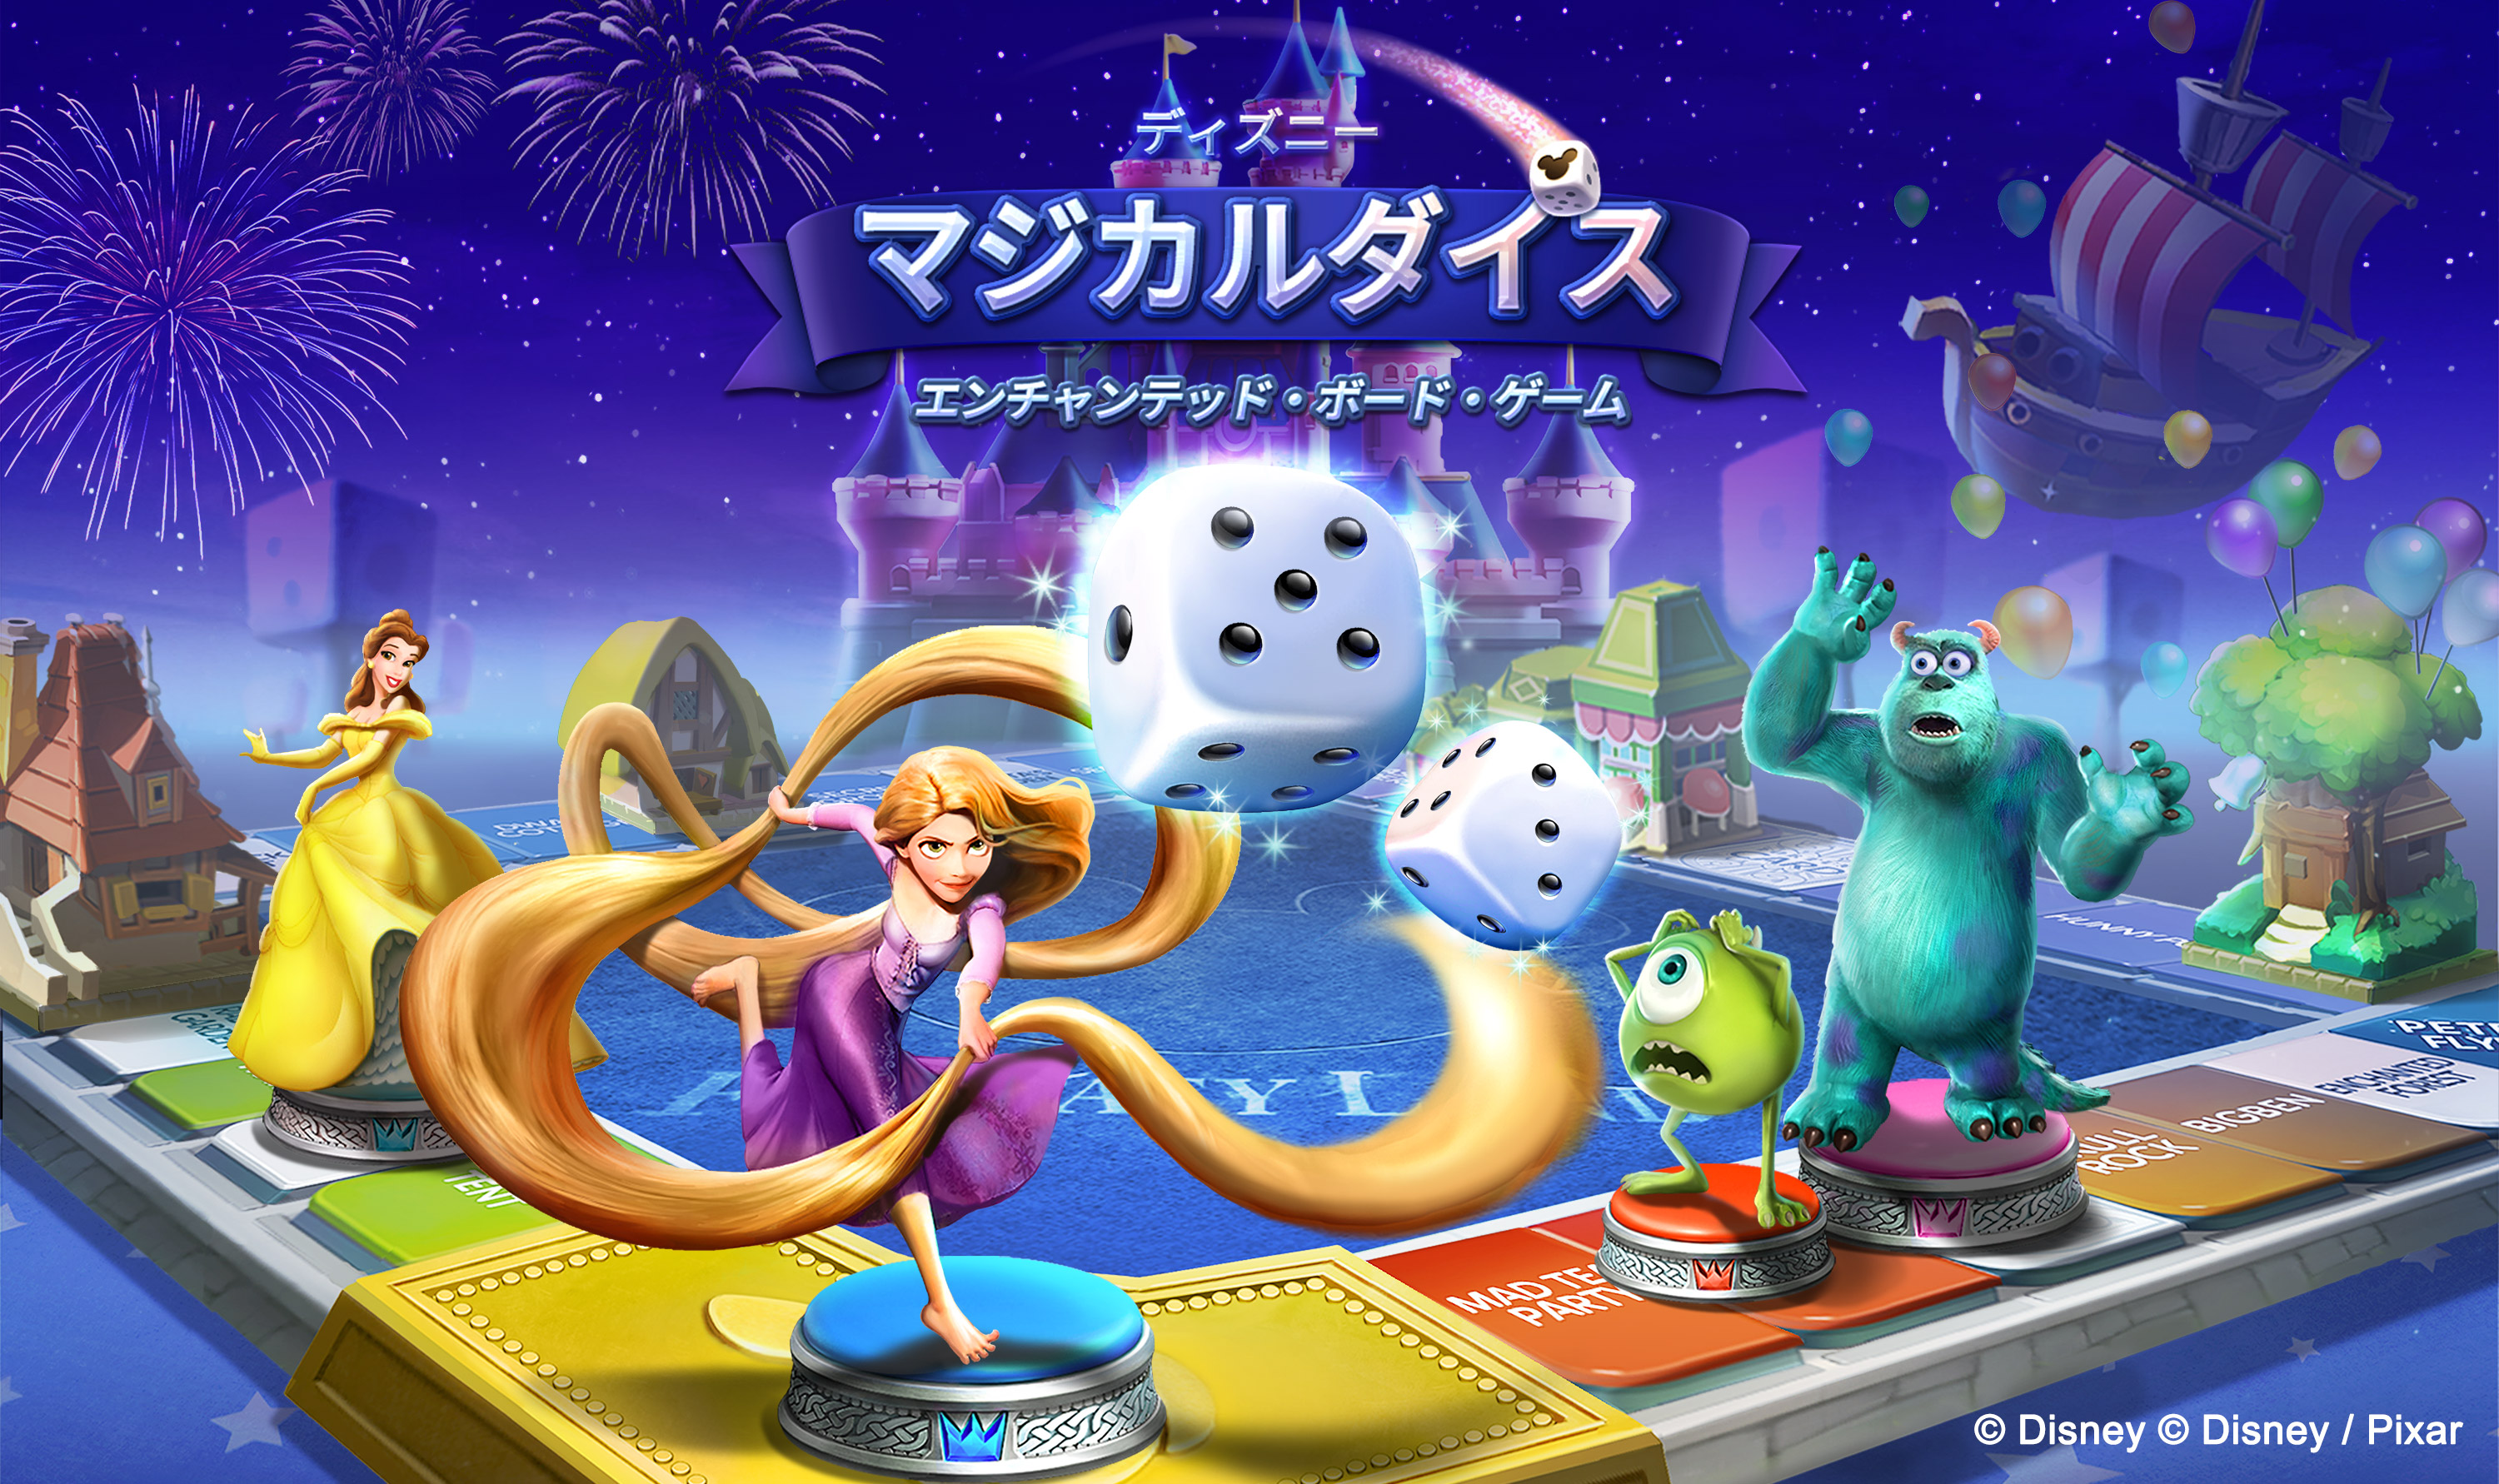 ネットマーブル ディズニーマジカルダイス エンチャンテッド ボード ゲーム を全世界155ヶ国でリリース ネットマーブルのプレスリリース